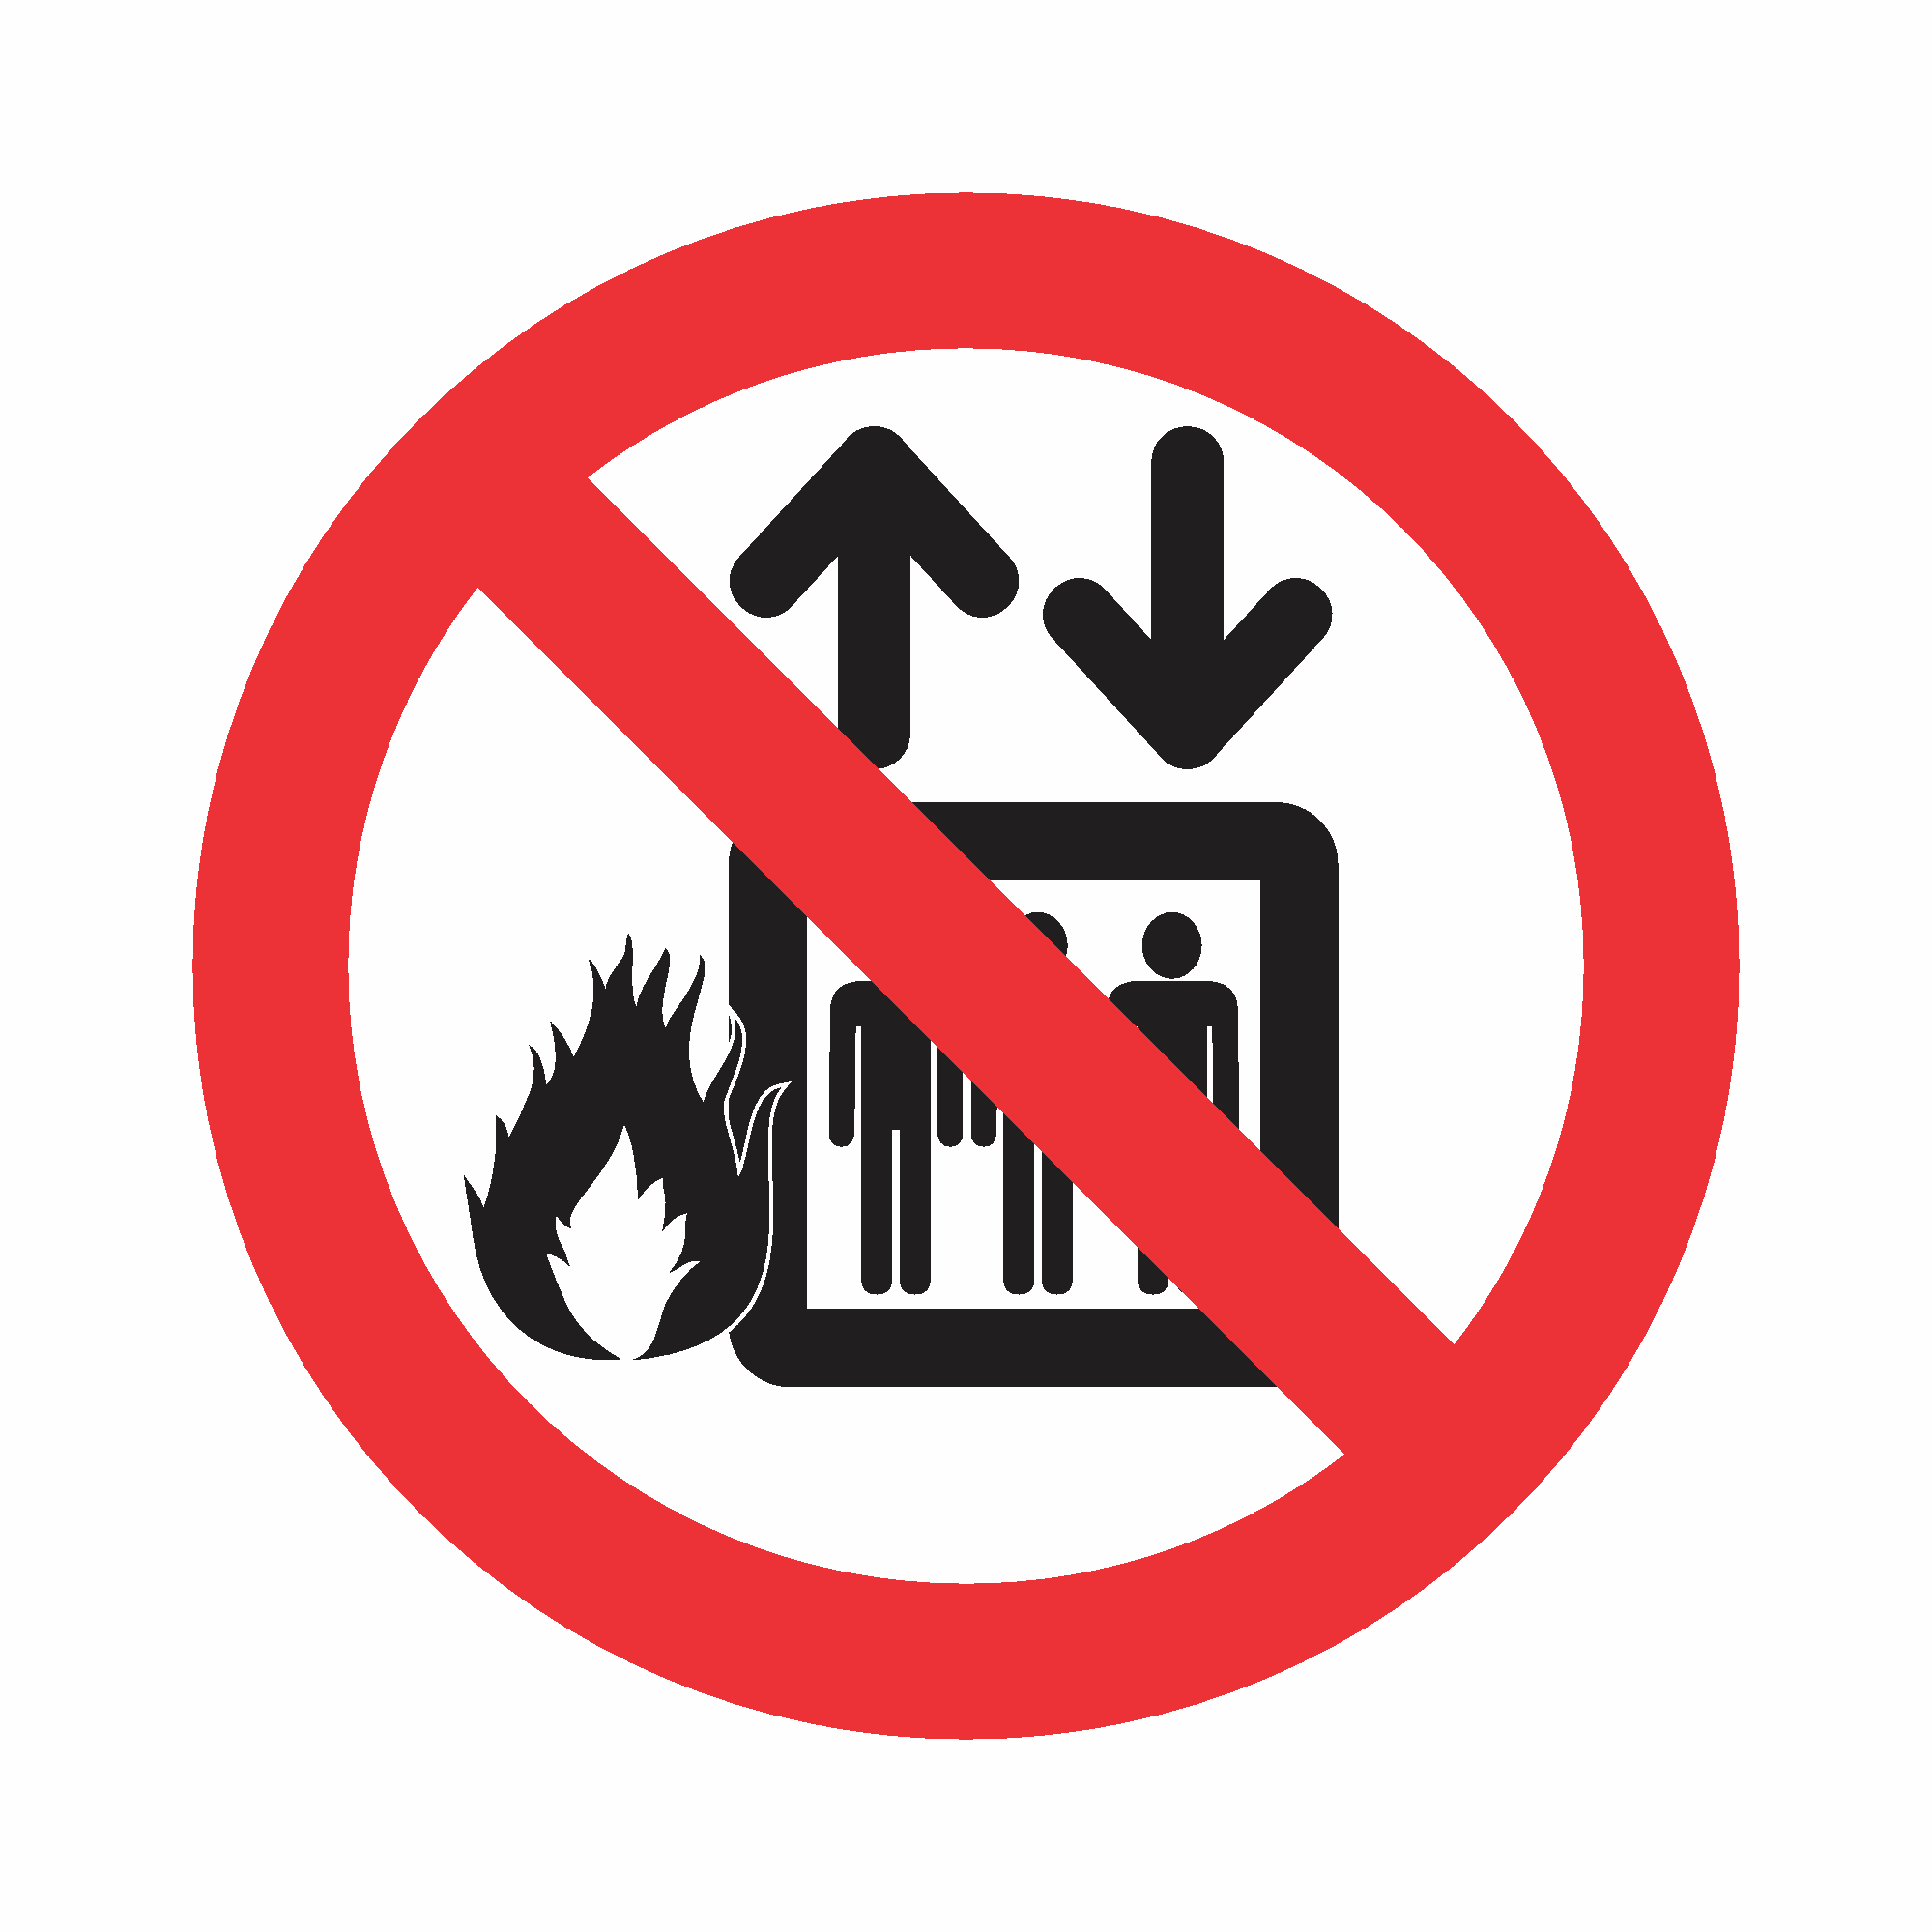 P4 - Proibido utilizar elevador em caso de incêndio